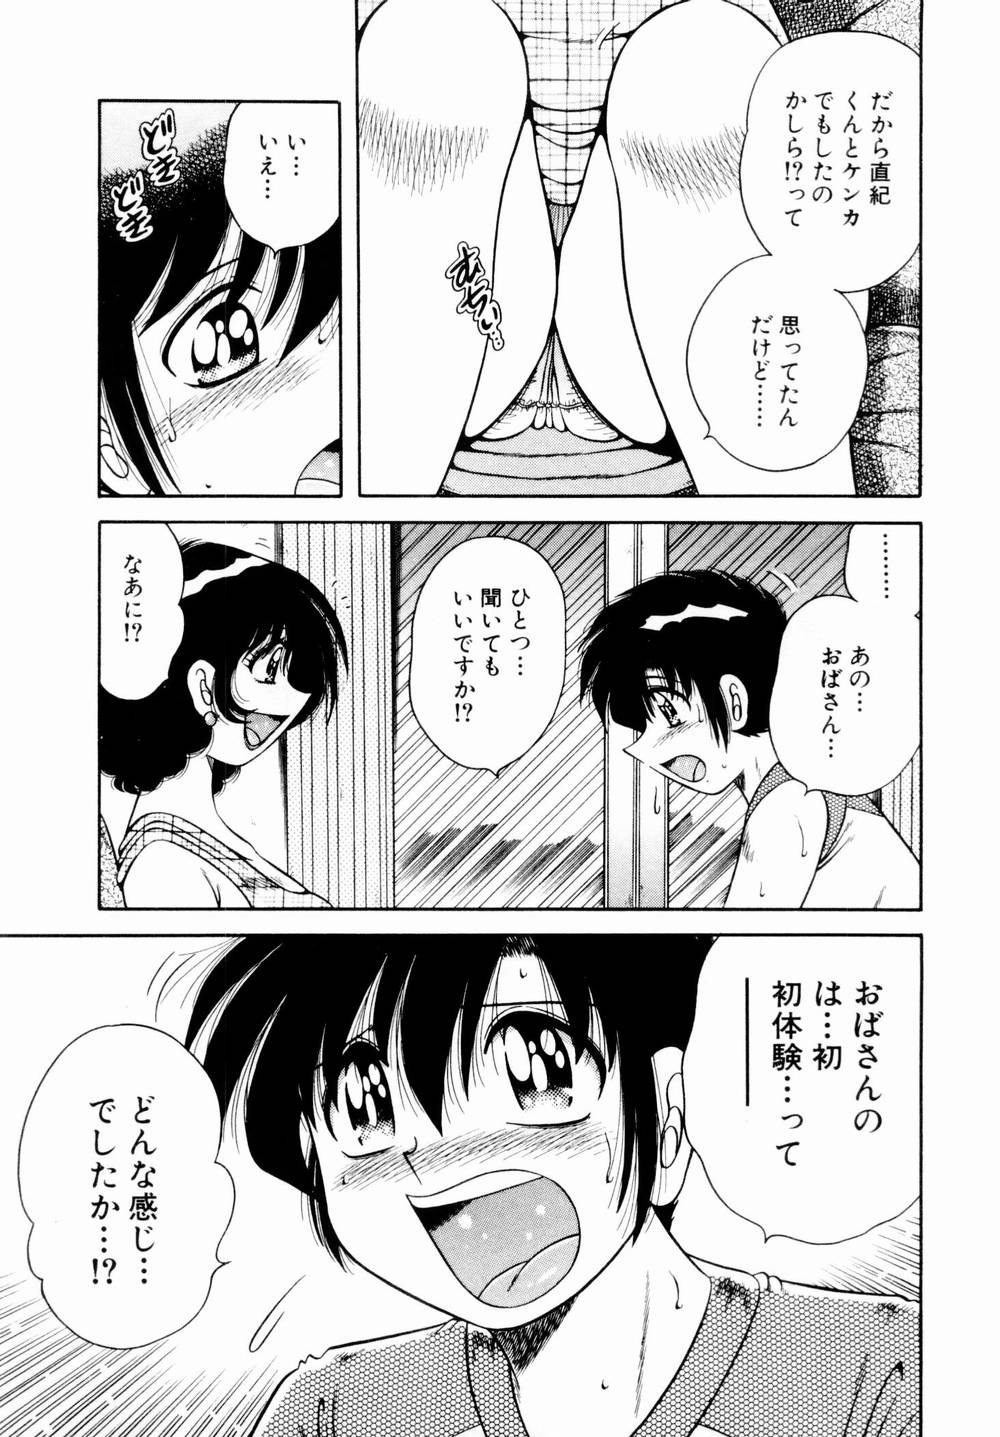 [Umino Sachi] Itazura na Megamitachi Volume 1 [海野幸] 悪戯な女神たち1